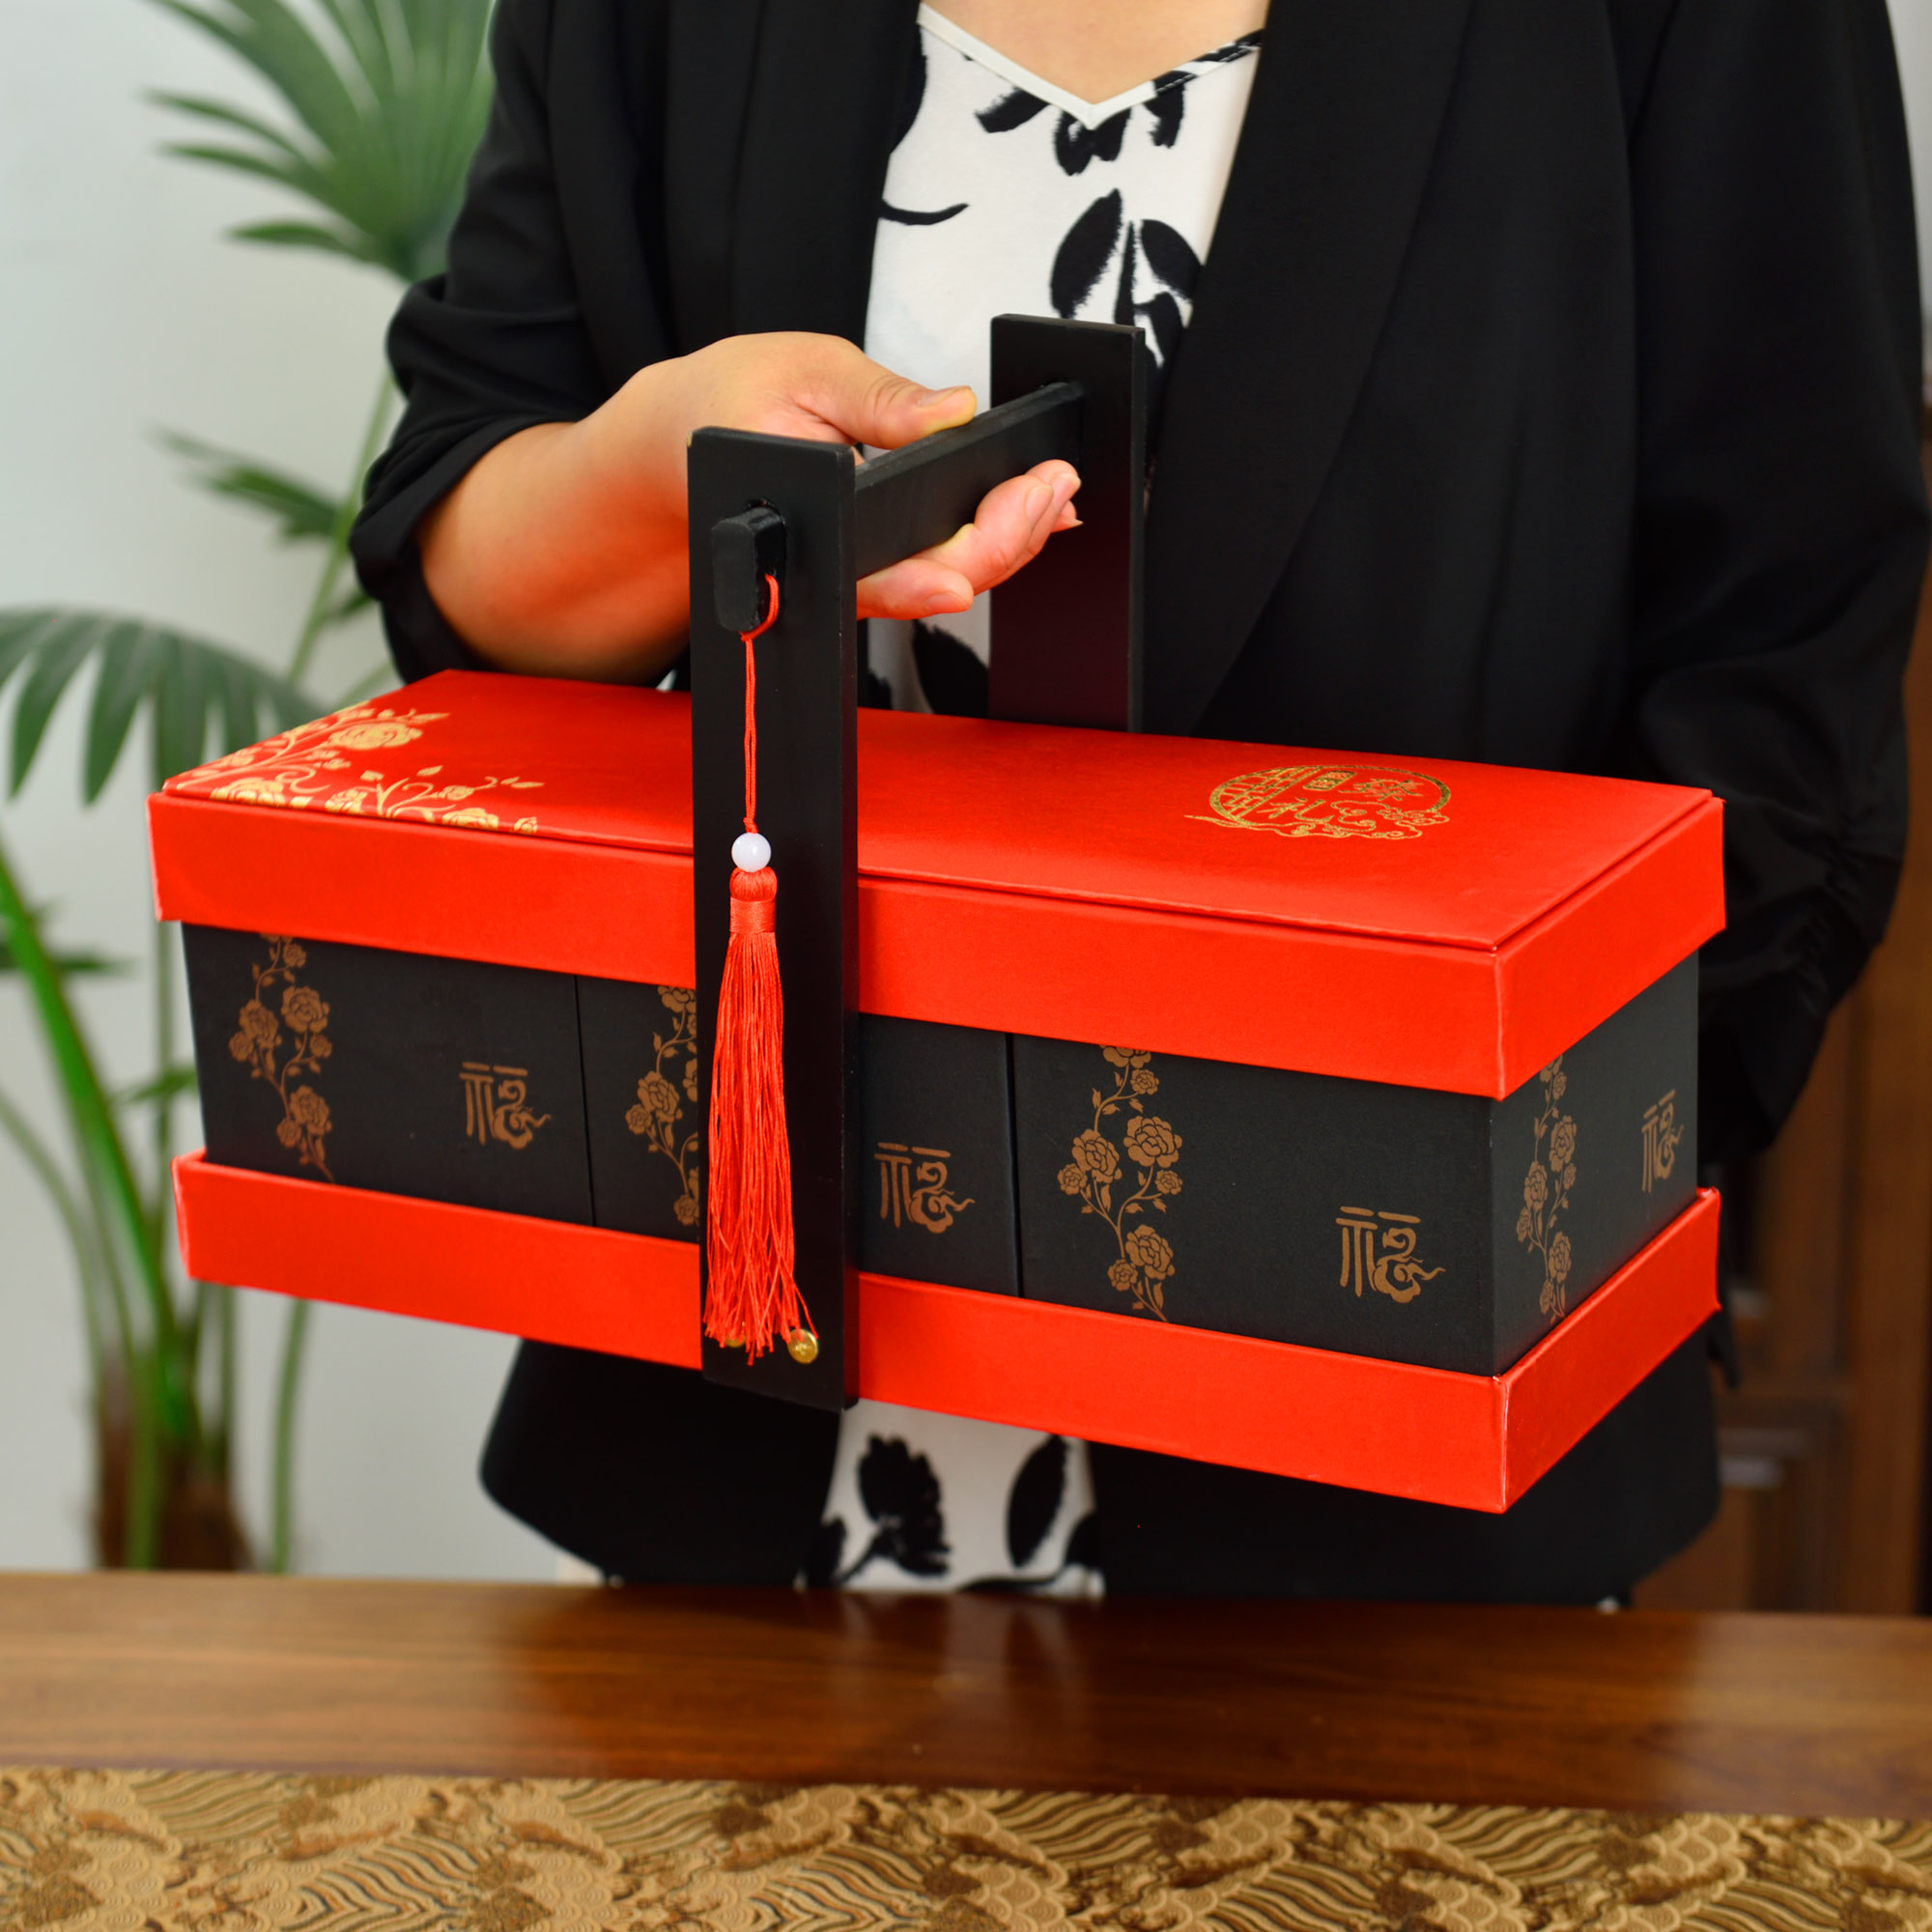 高档端午木质礼盒包装盒干果月饼熟食酒店礼品通用手提篮定制文字